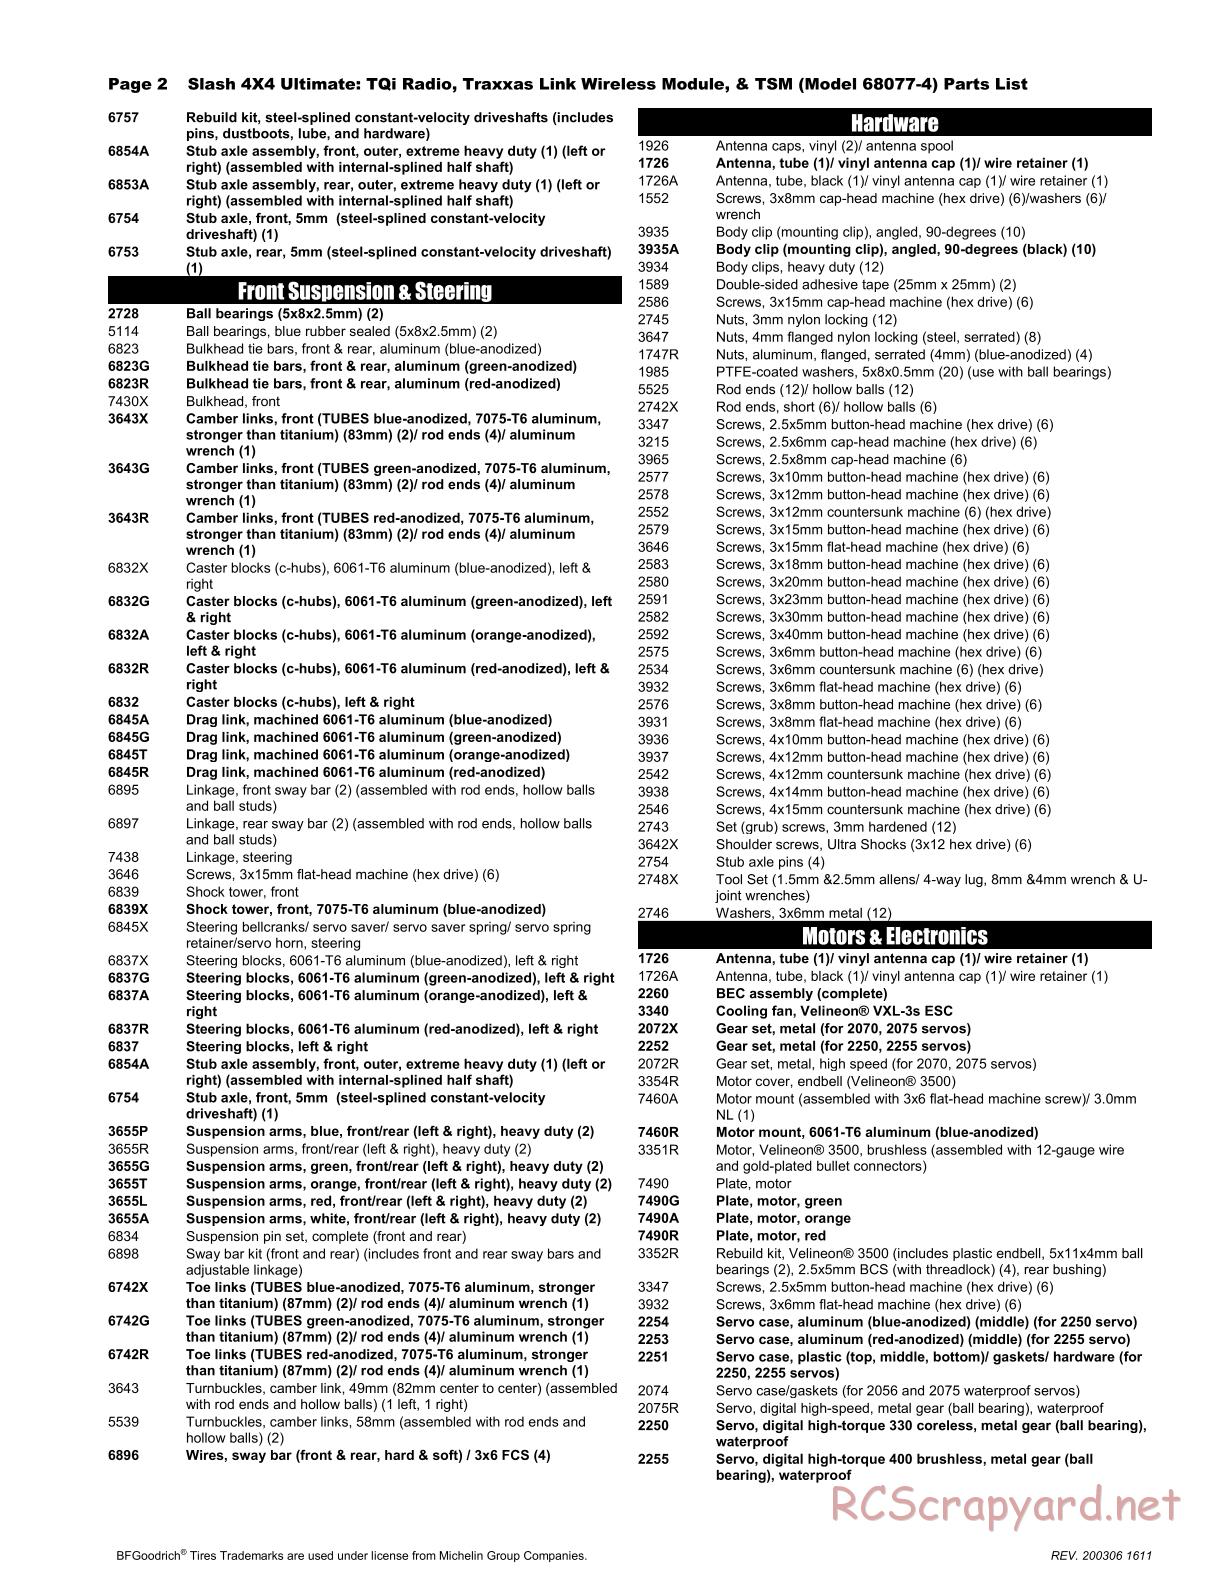 Traxxas - Slash 4x4 Ultimate TSM - Parts List - Page 2